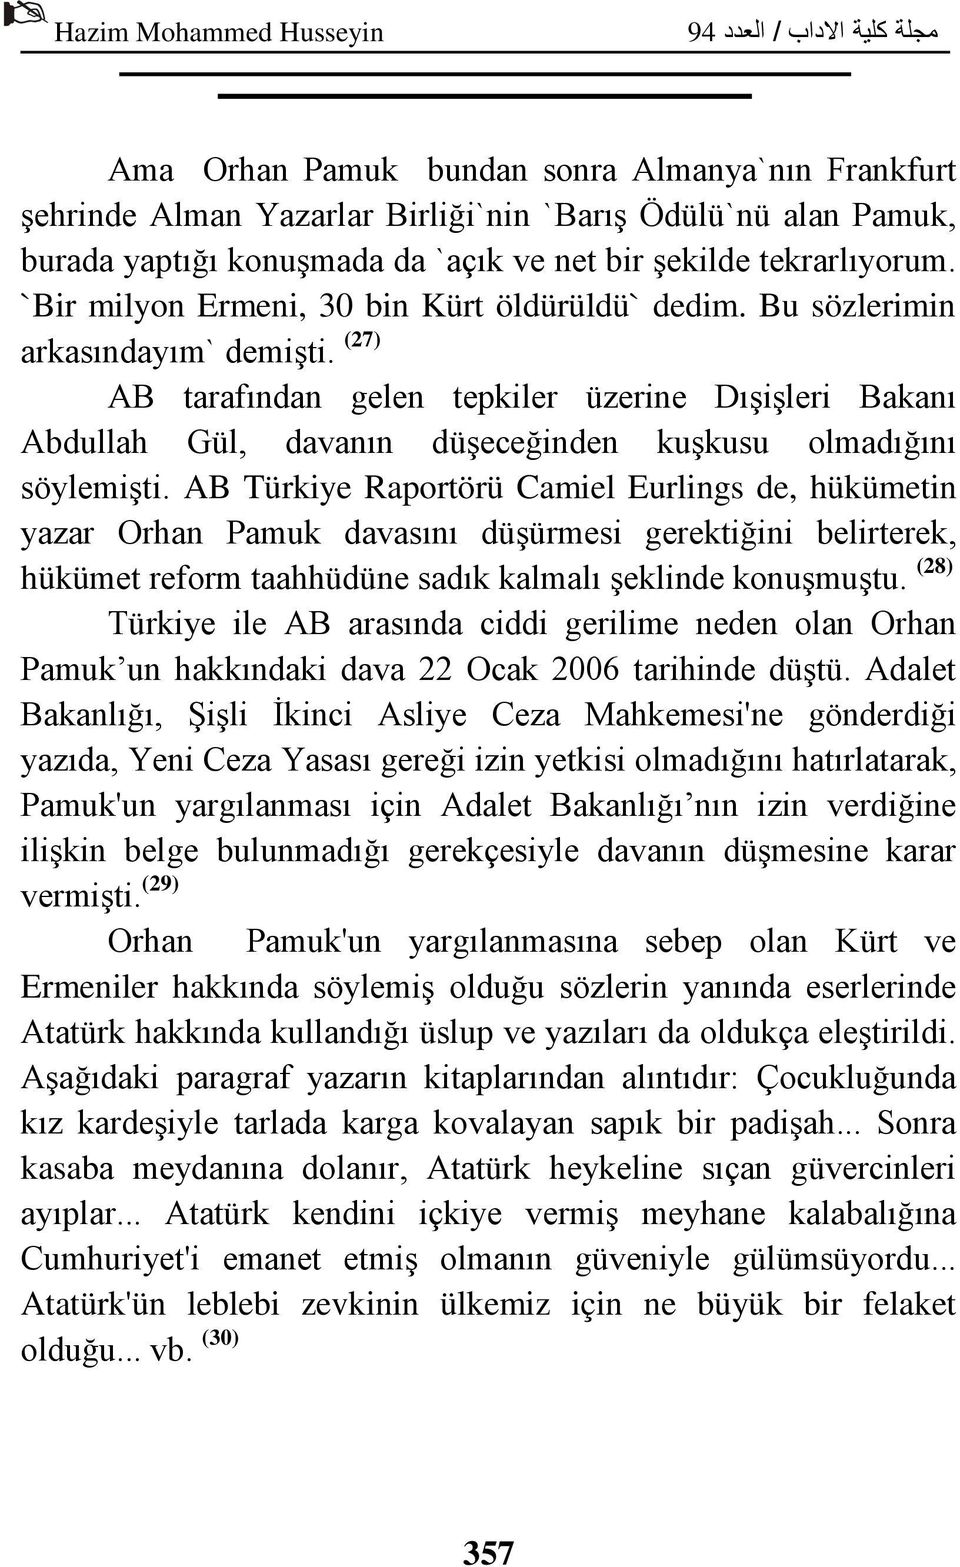 (27) AB tarafından gelen tepkiler üzerine Dışişleri Bakanı Abdullah Gül, davanın düşeceğinden kuşkusu olmadığını söylemişti.